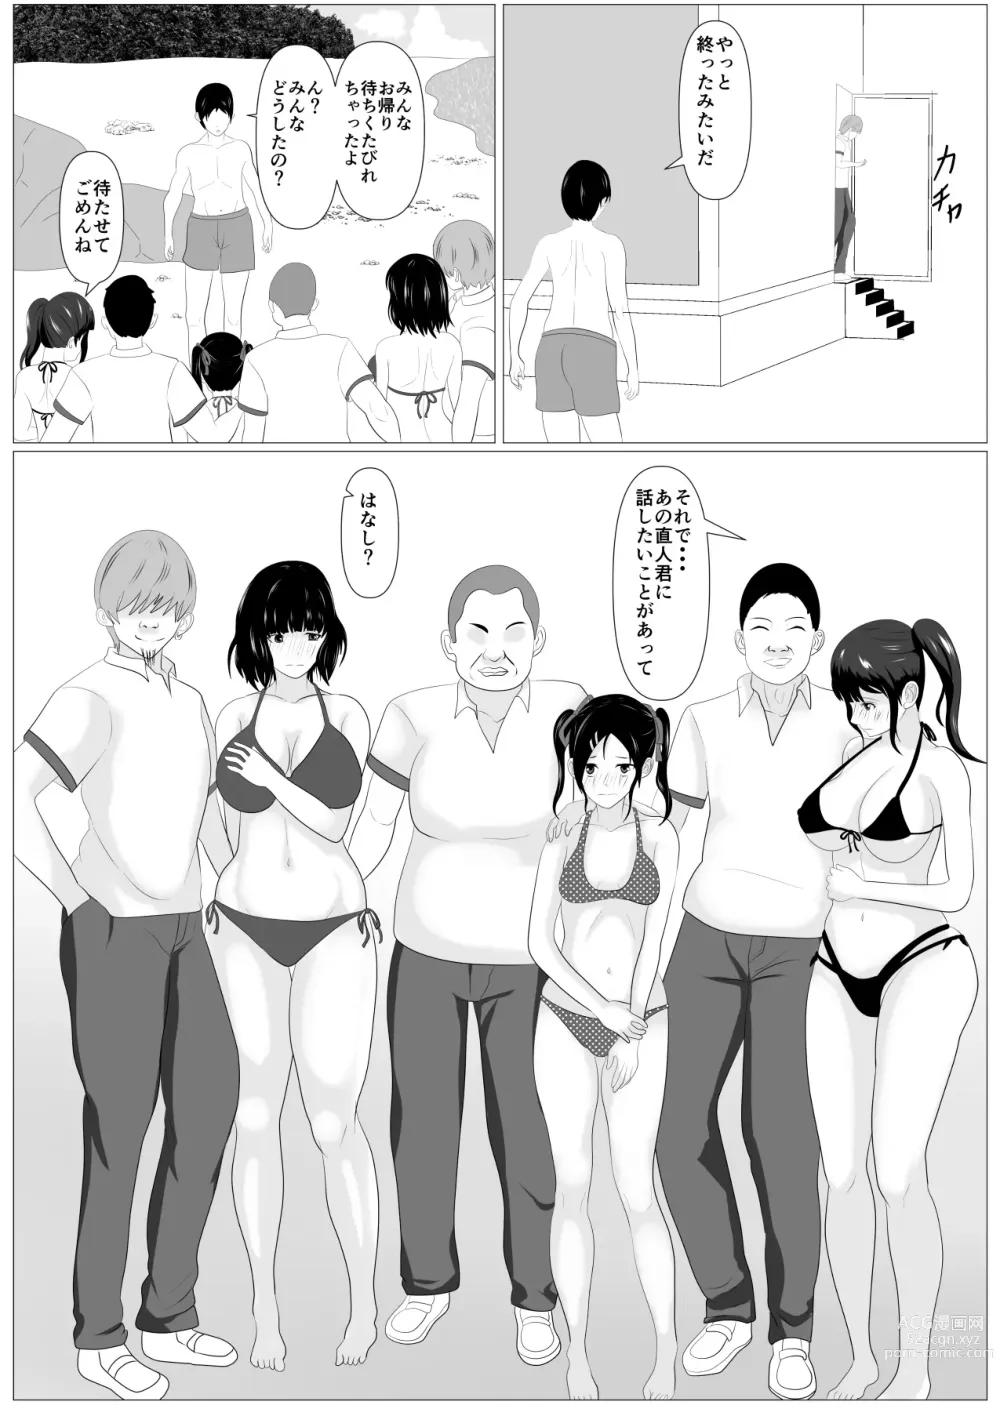 Page 72 of doujinshi Kazoku Torare